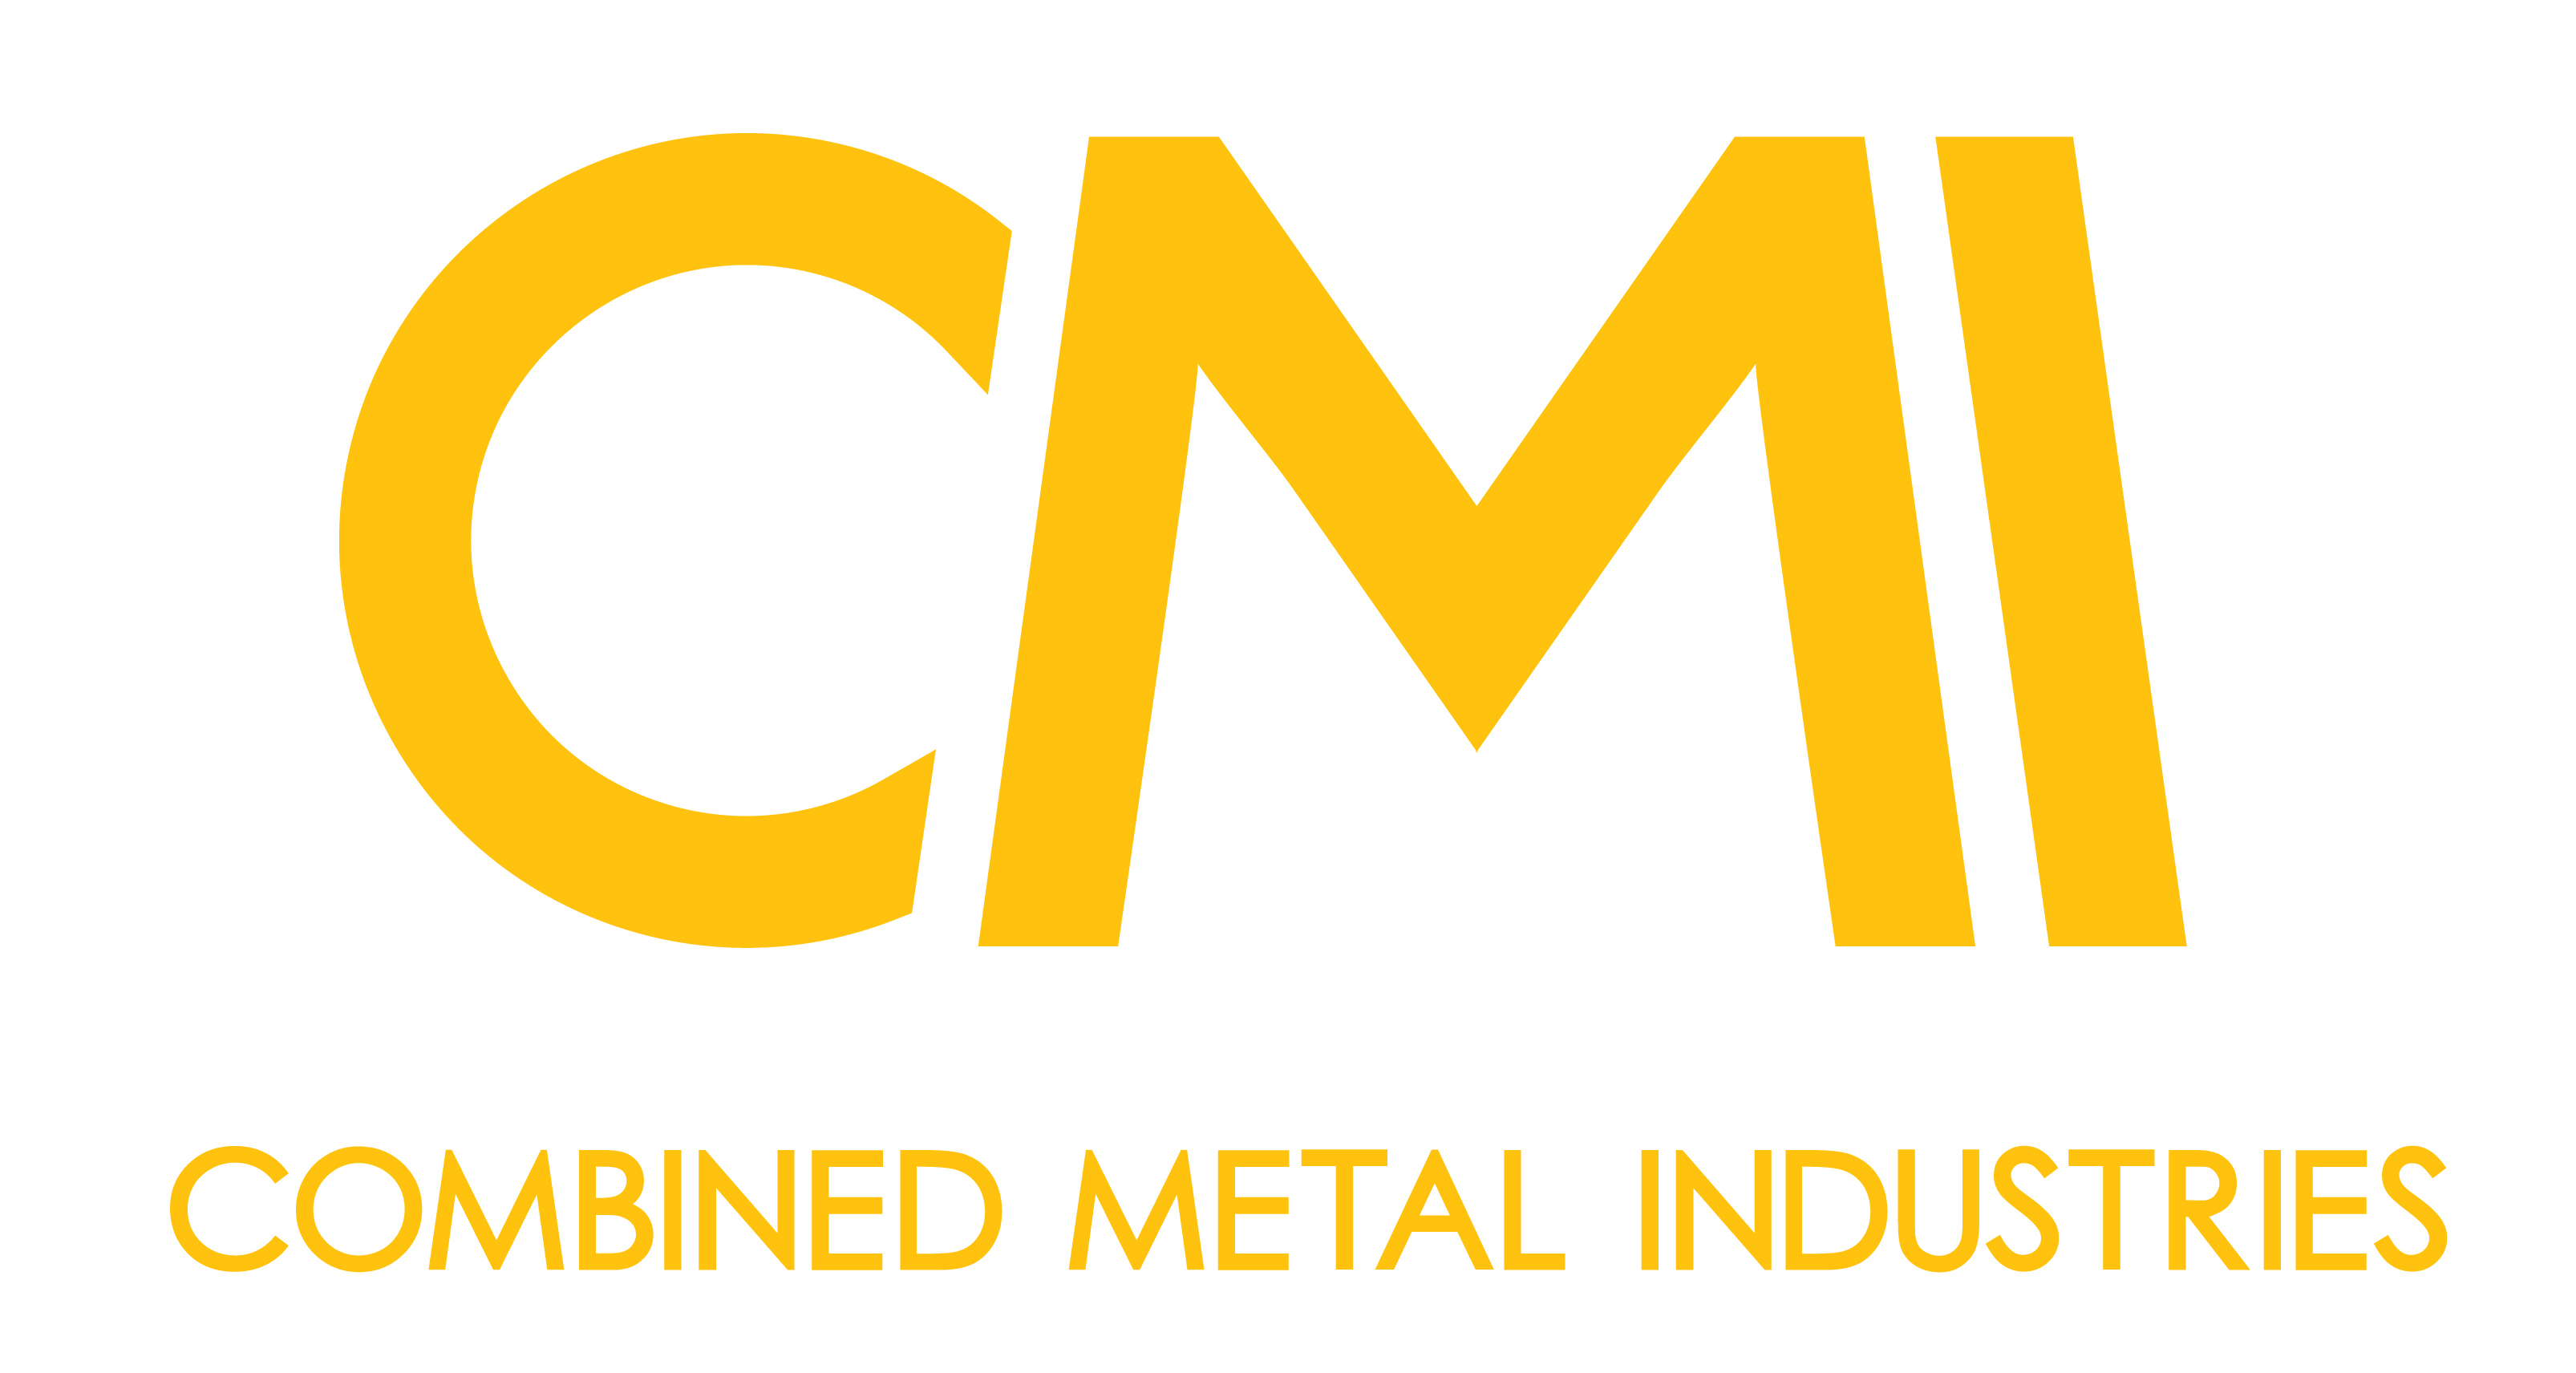 Combined Metal Industries